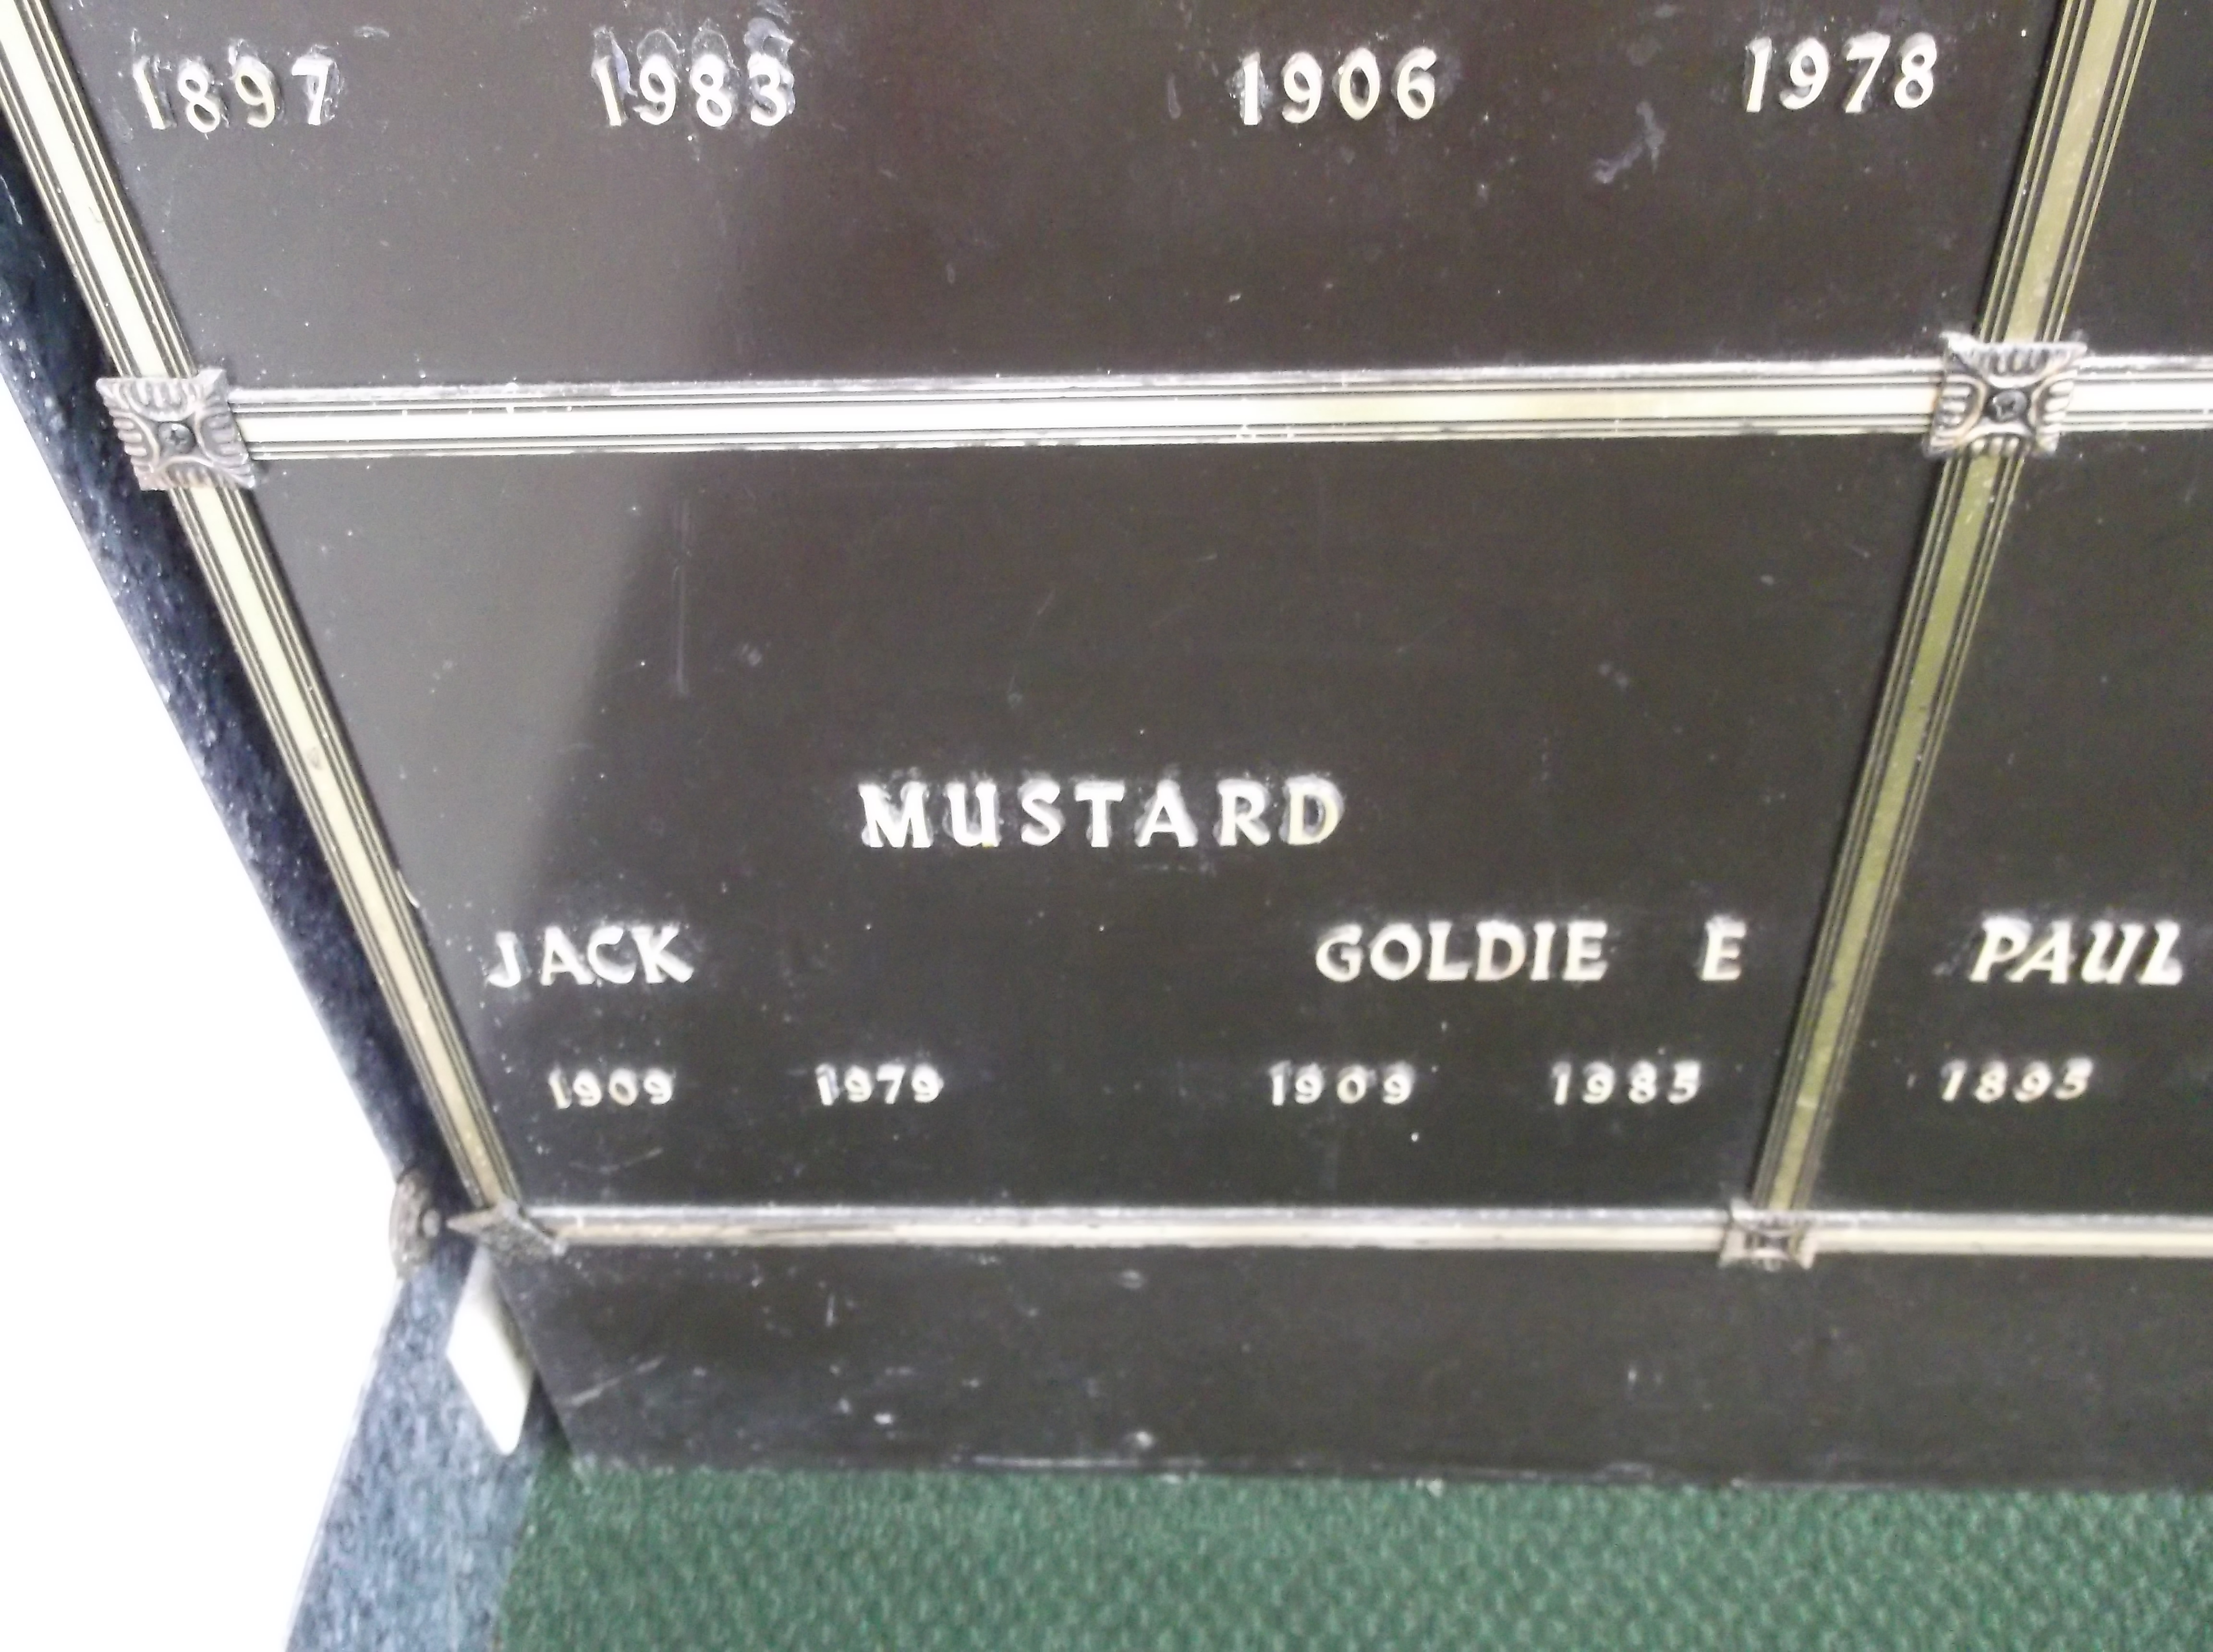 Jack Mustard